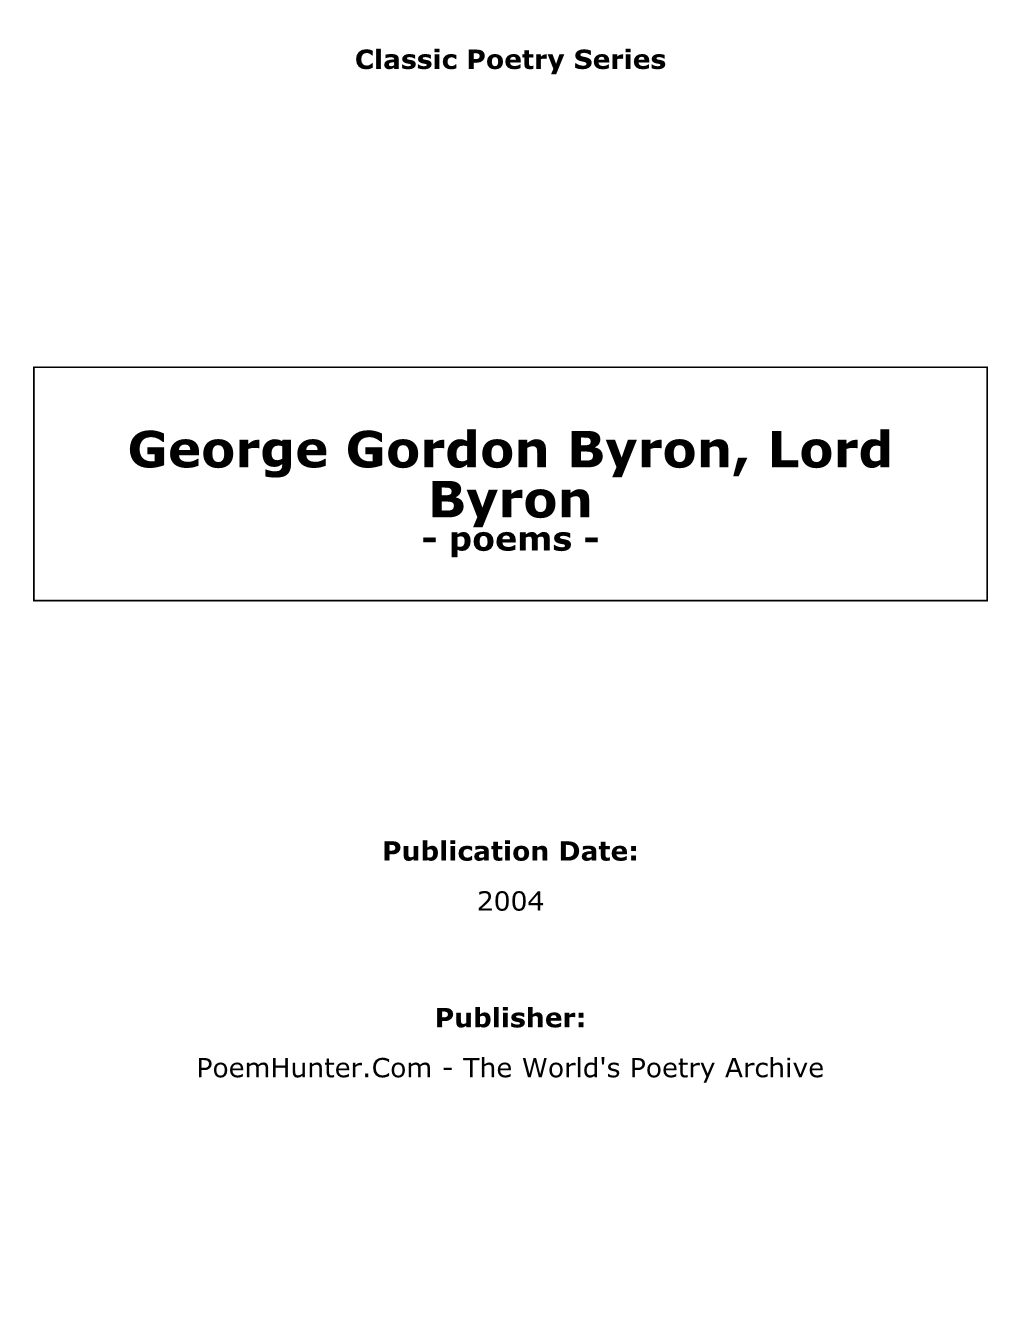 George Gordon Byron, Lord Byron - Poems